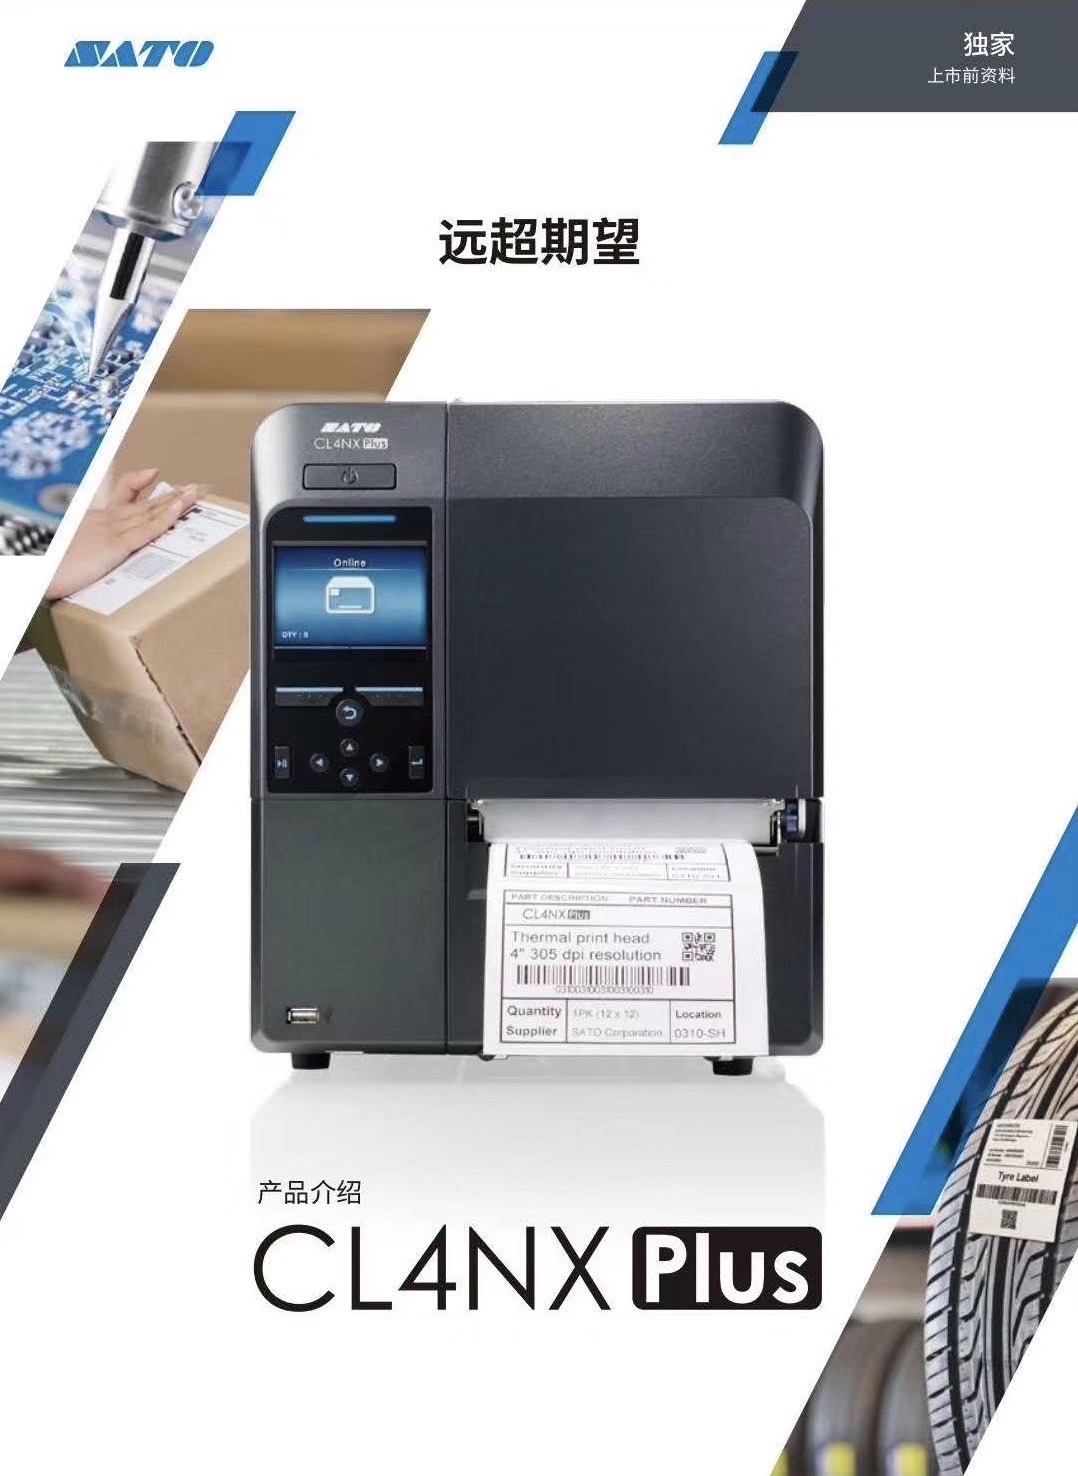 CL4NX PLUS 200点电商打印包设备图片